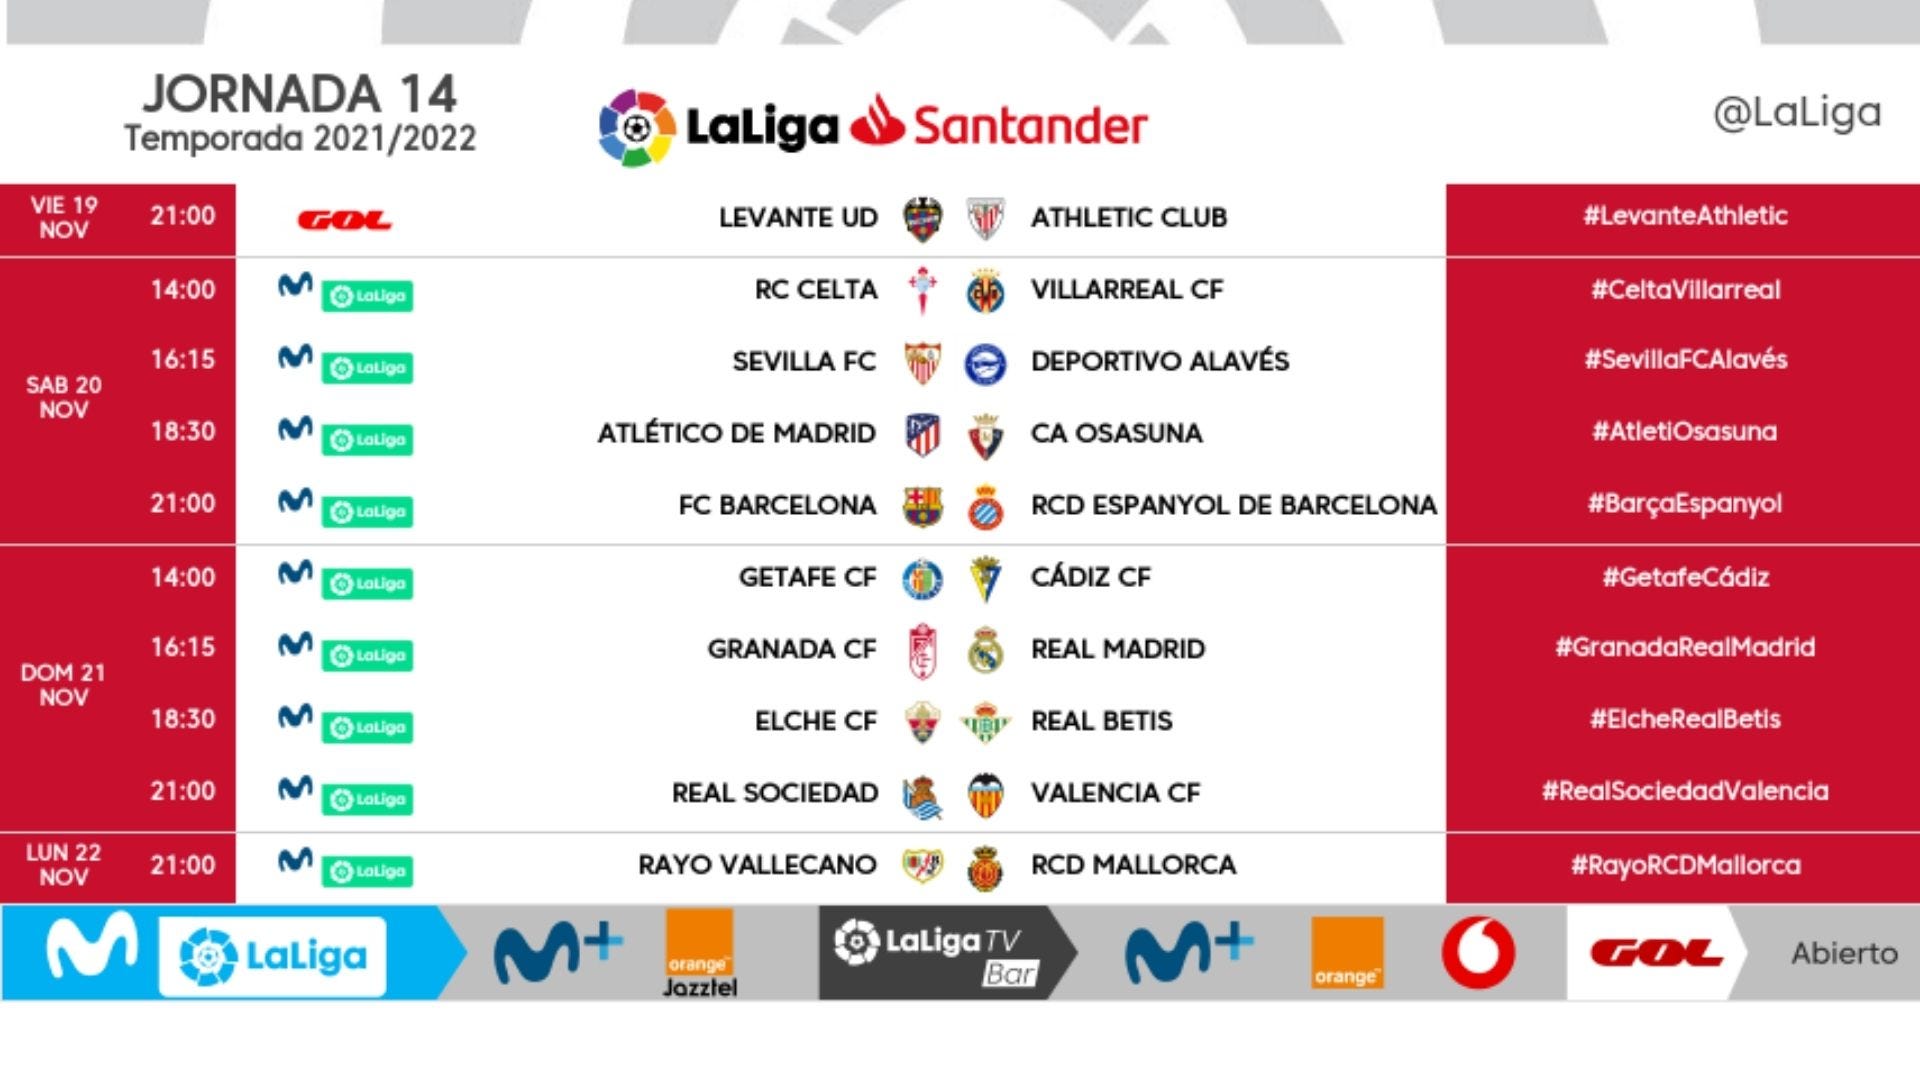 14 de Horarios, partidos, clasificación, televisión y resultados | Goal.com Espana